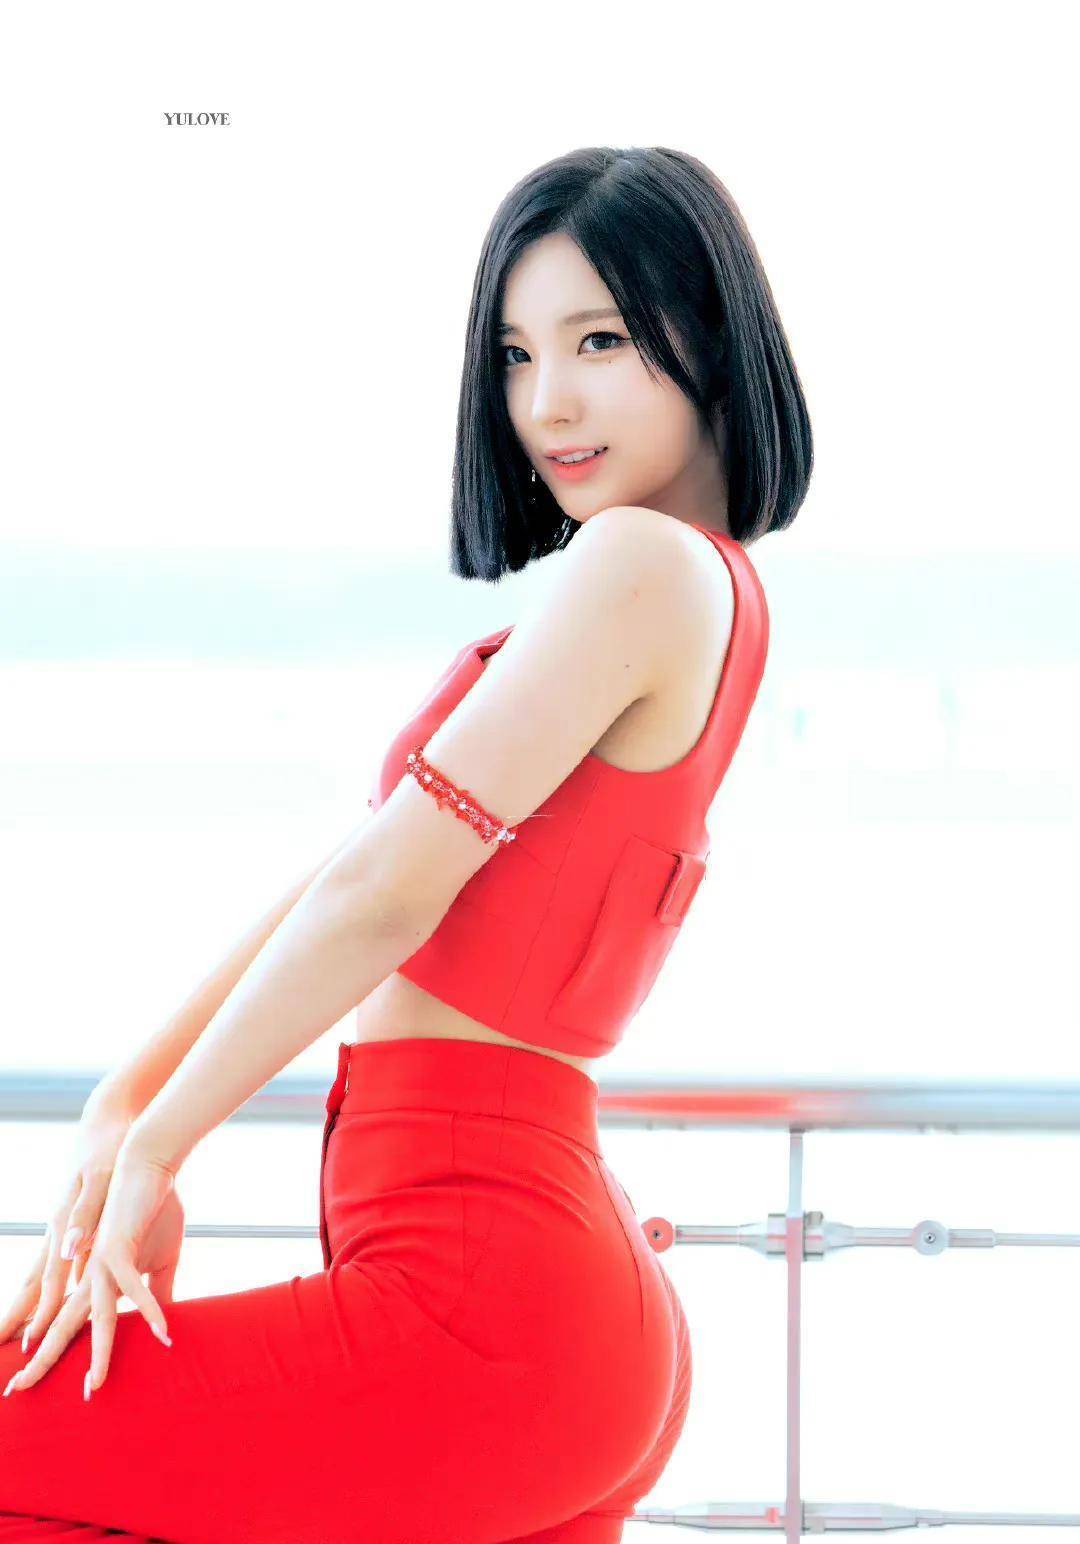 韩国女星金昭熙,拥有高颜值与性感身材的新生代solo歌手